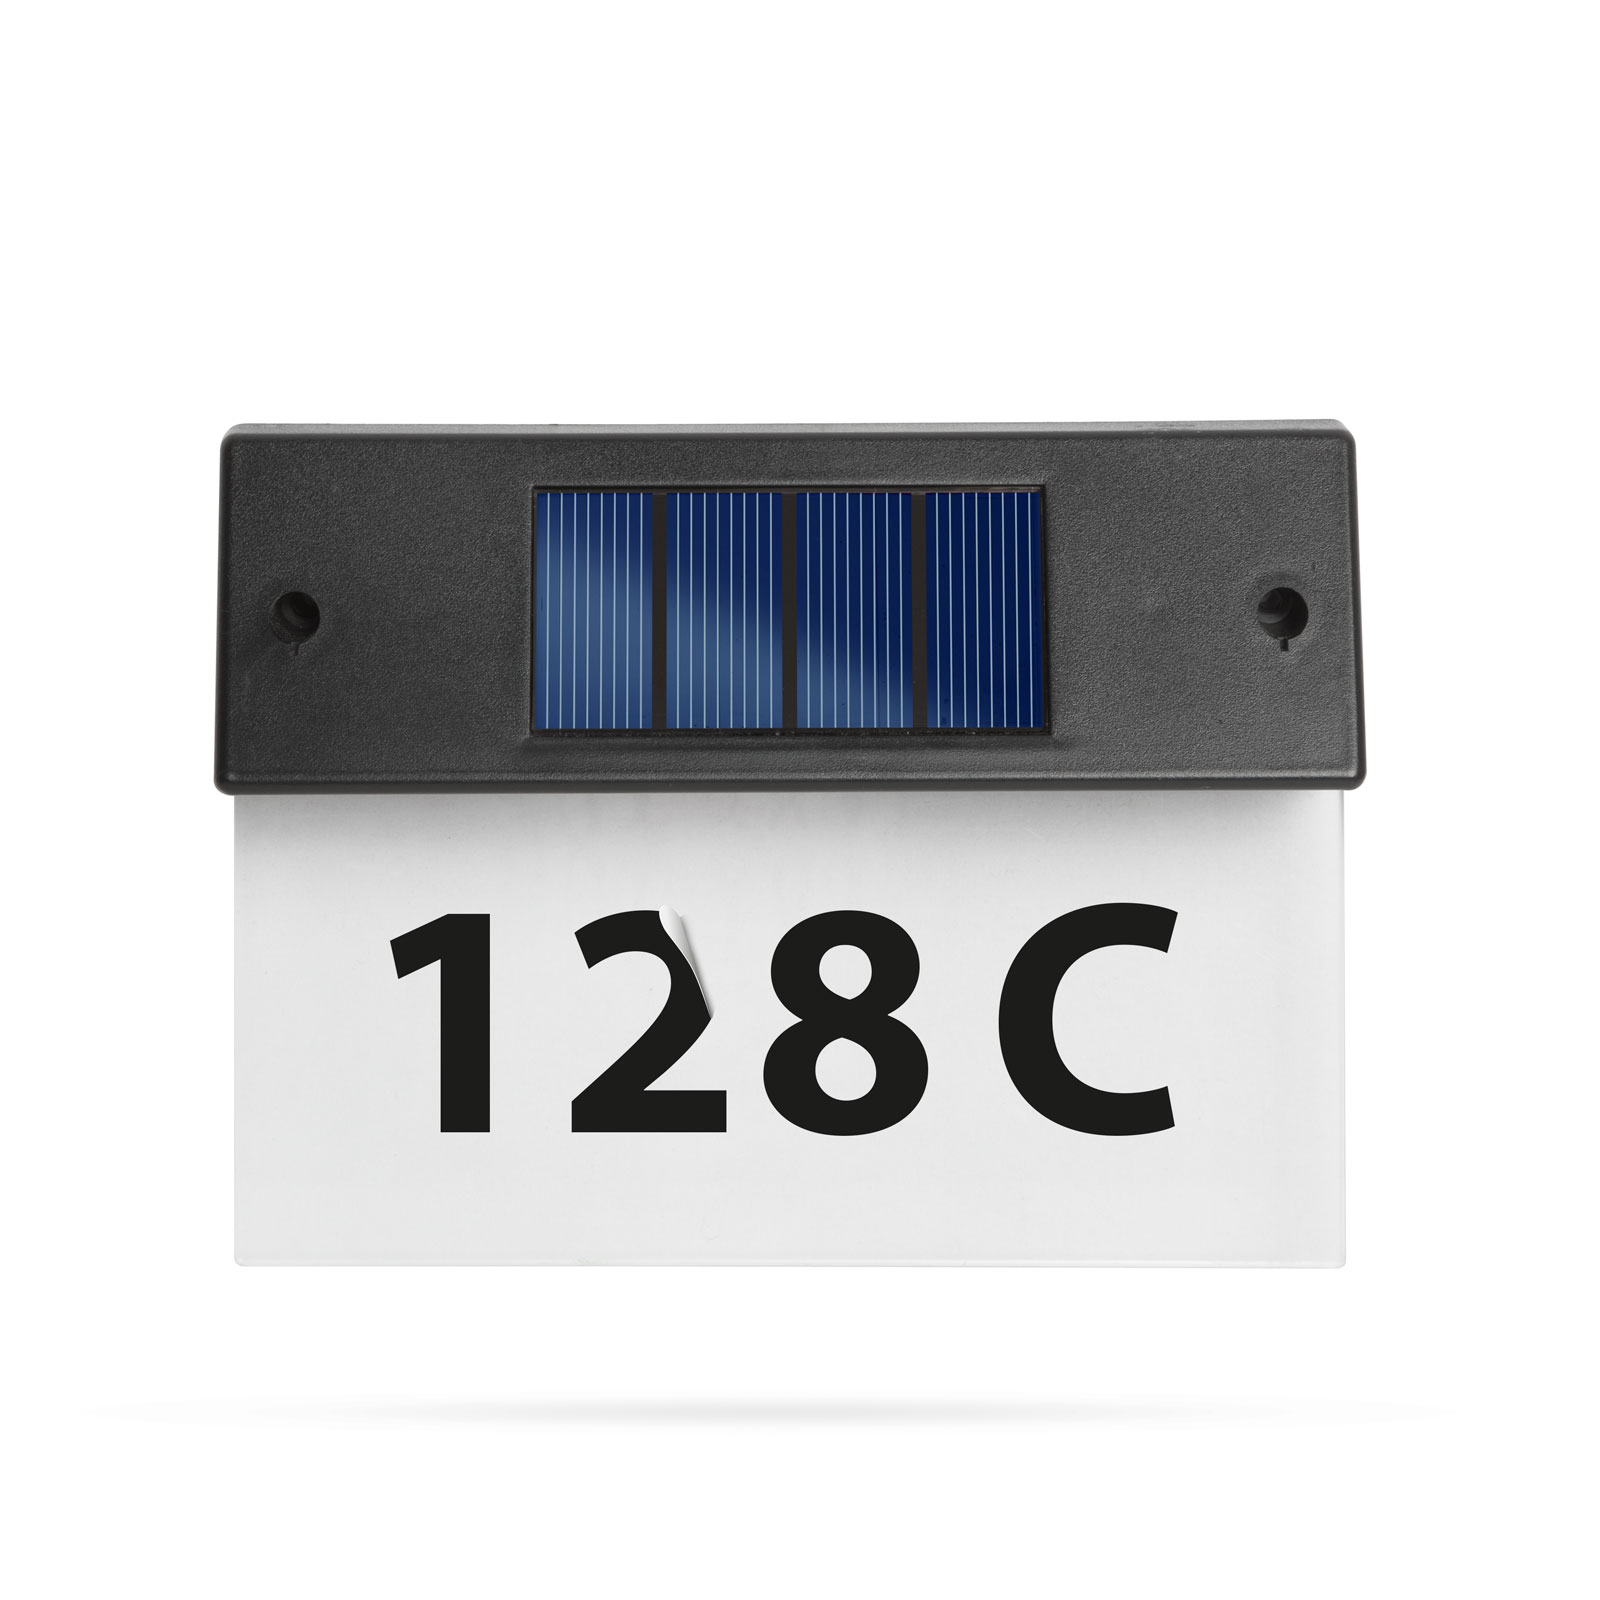 Solární osvětlení čísla domu - průhledné plexi - studená bílá LED - 18 x 20 cm